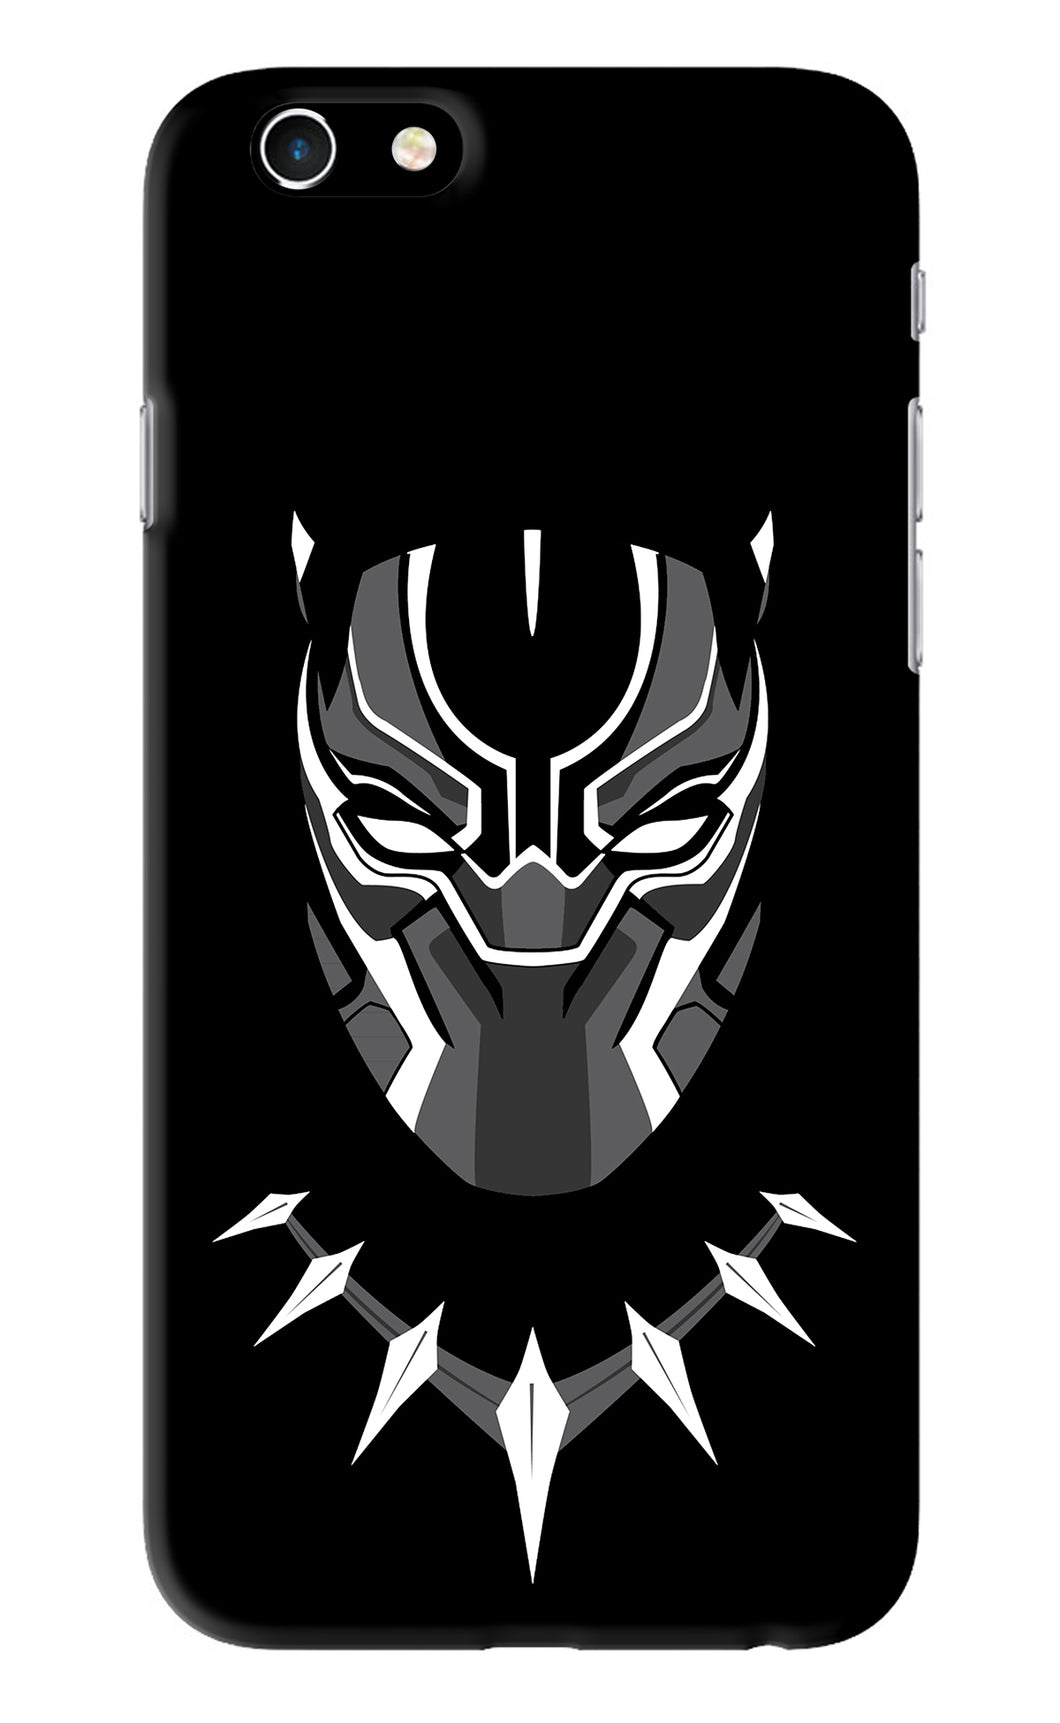 Black Panther iPhone 6 Back Skin Wrap